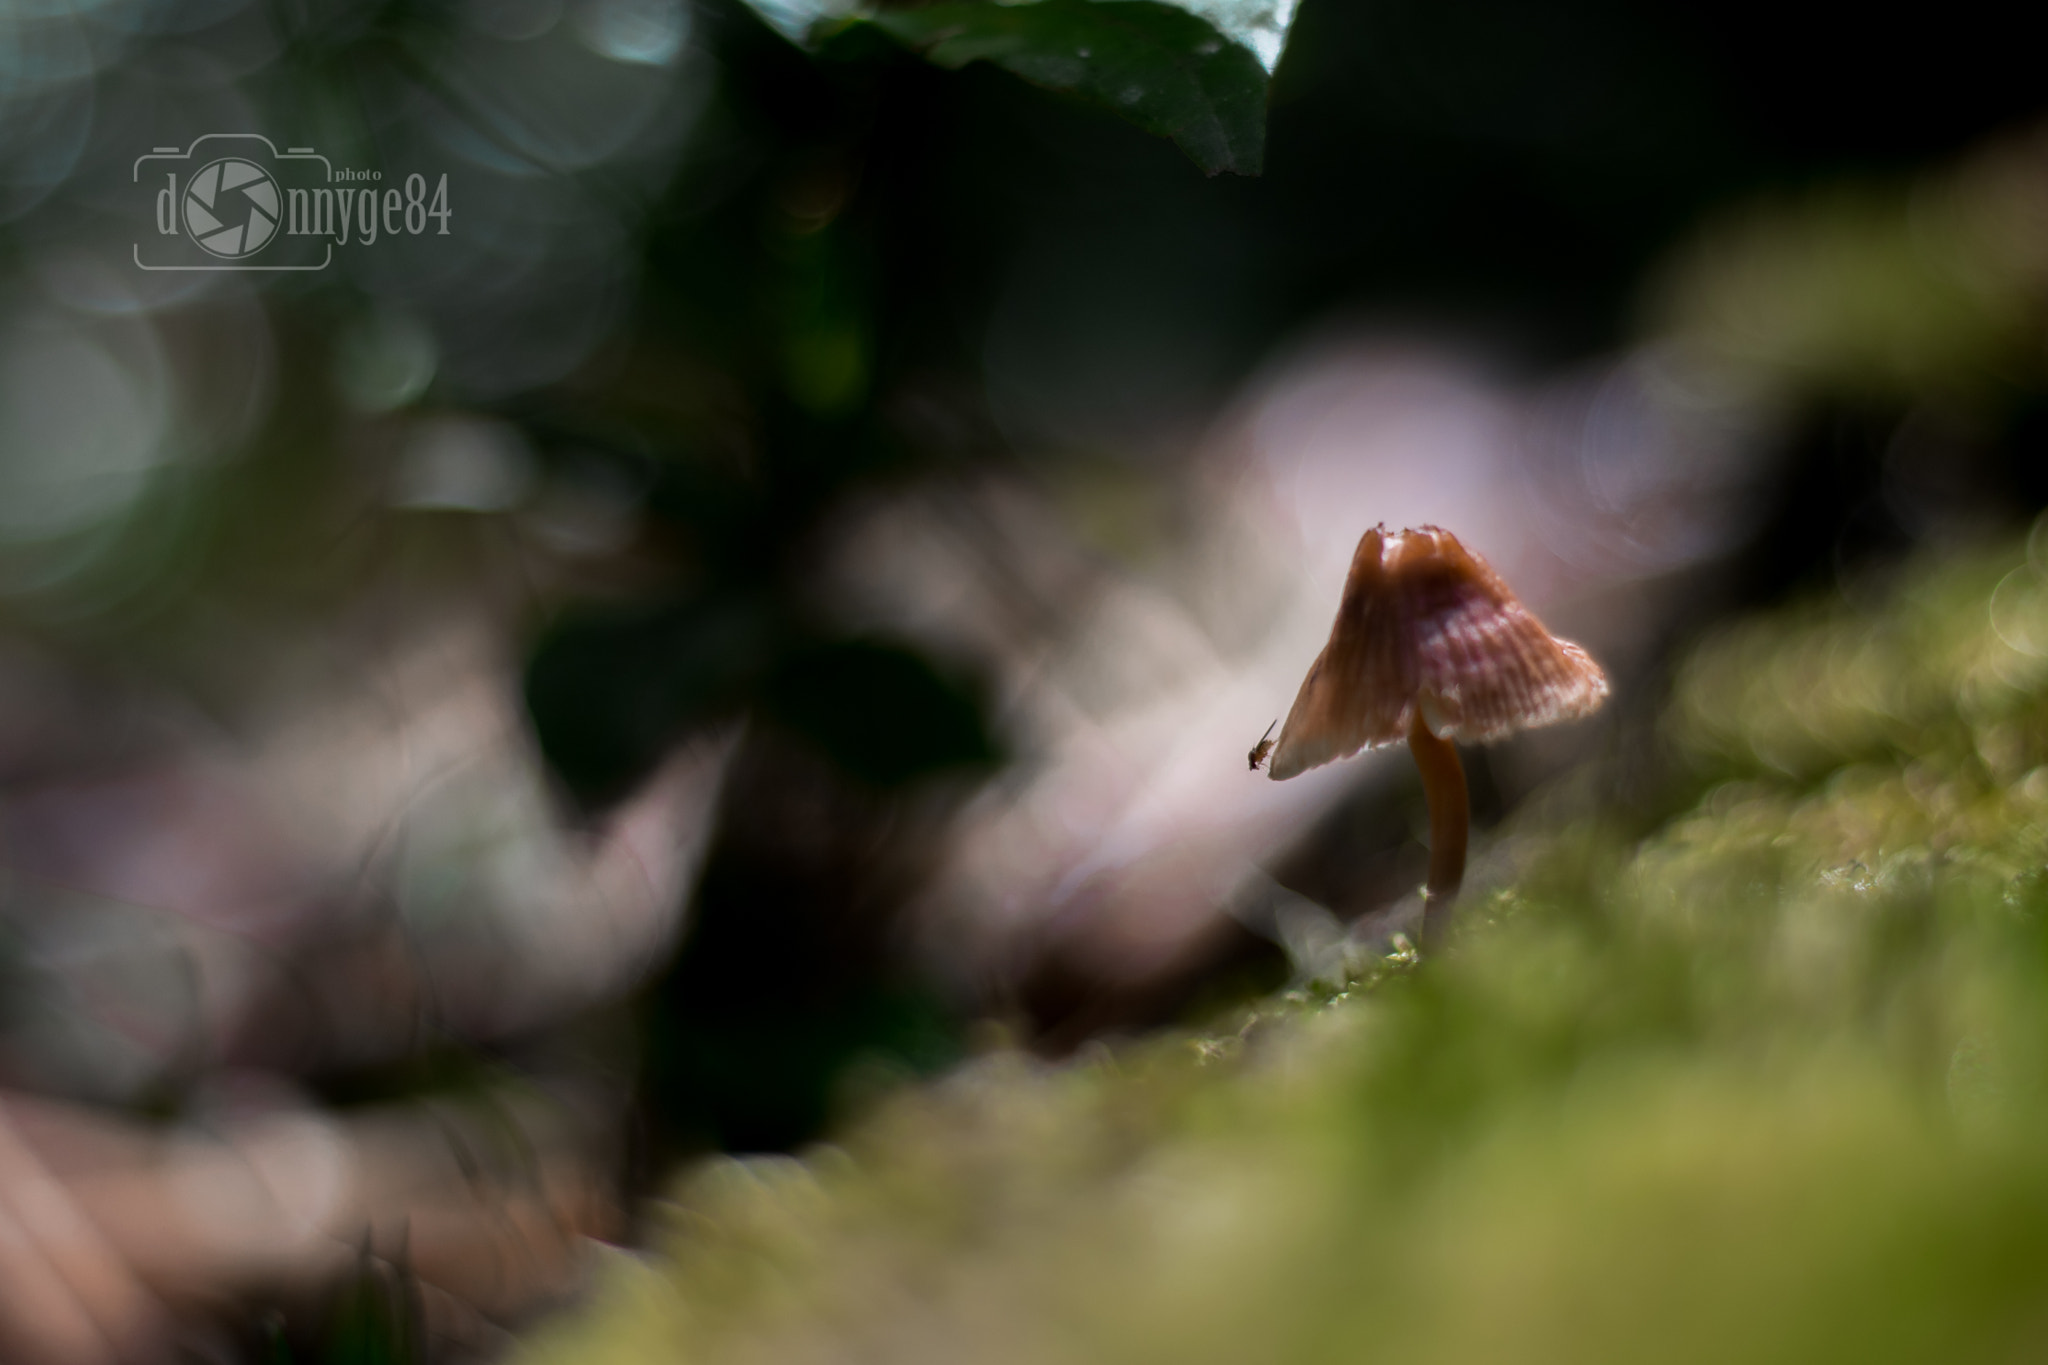 Nikon D5300 + Nikon AF Nikkor 50mm F1.8D sample photo. Mushroom in the moss photography